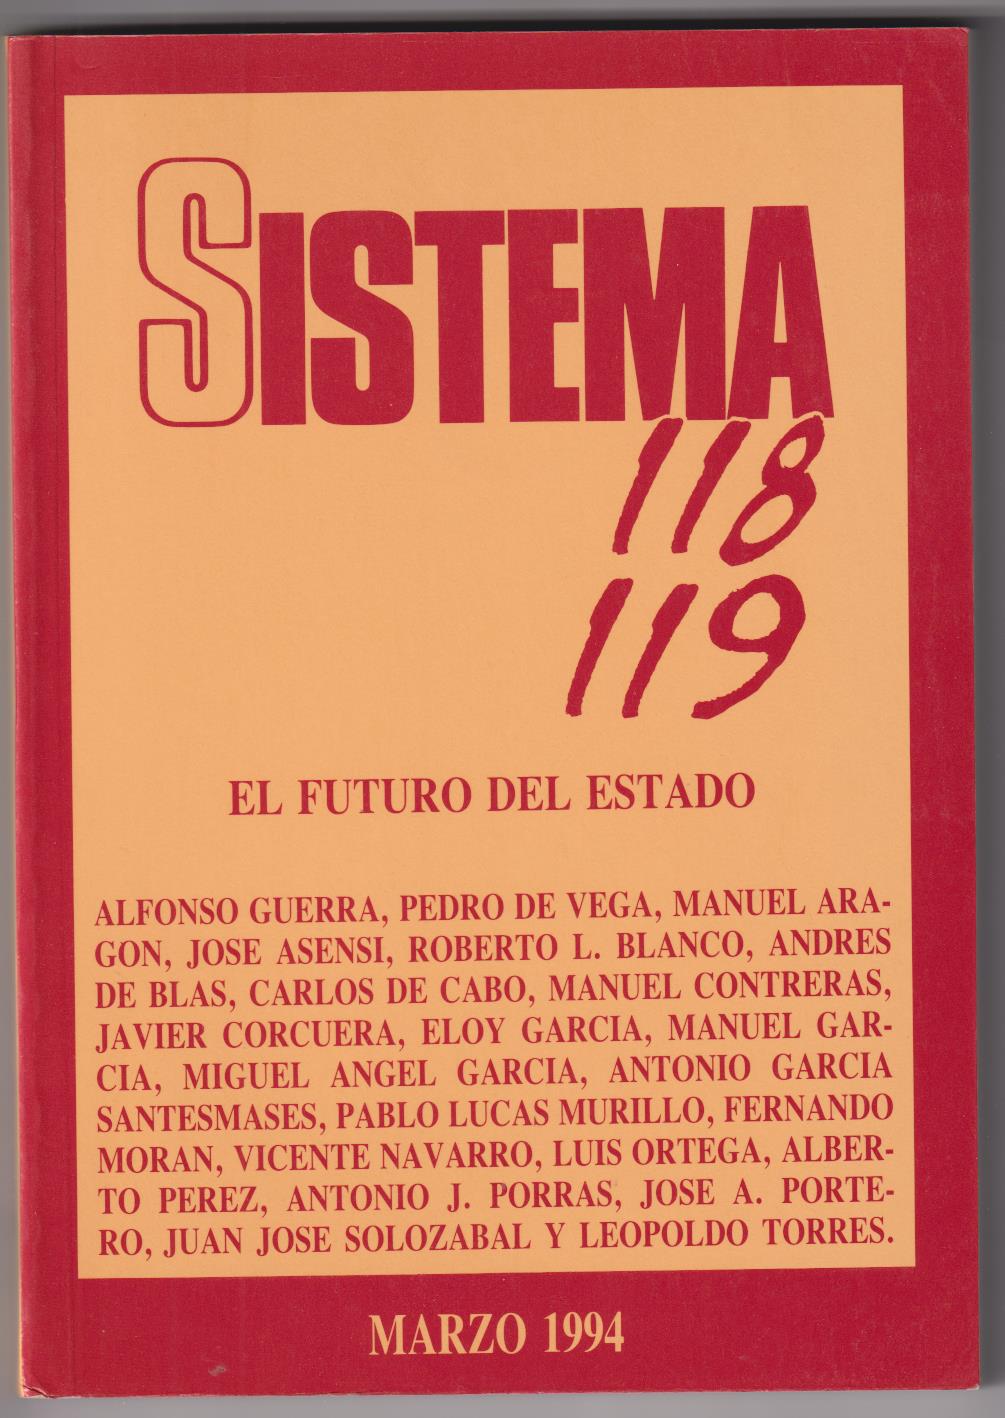 El Sistema 118 119. El futuro del Estado. Alfonso Guerra y otros. Marzo de 1994. SIN USAR